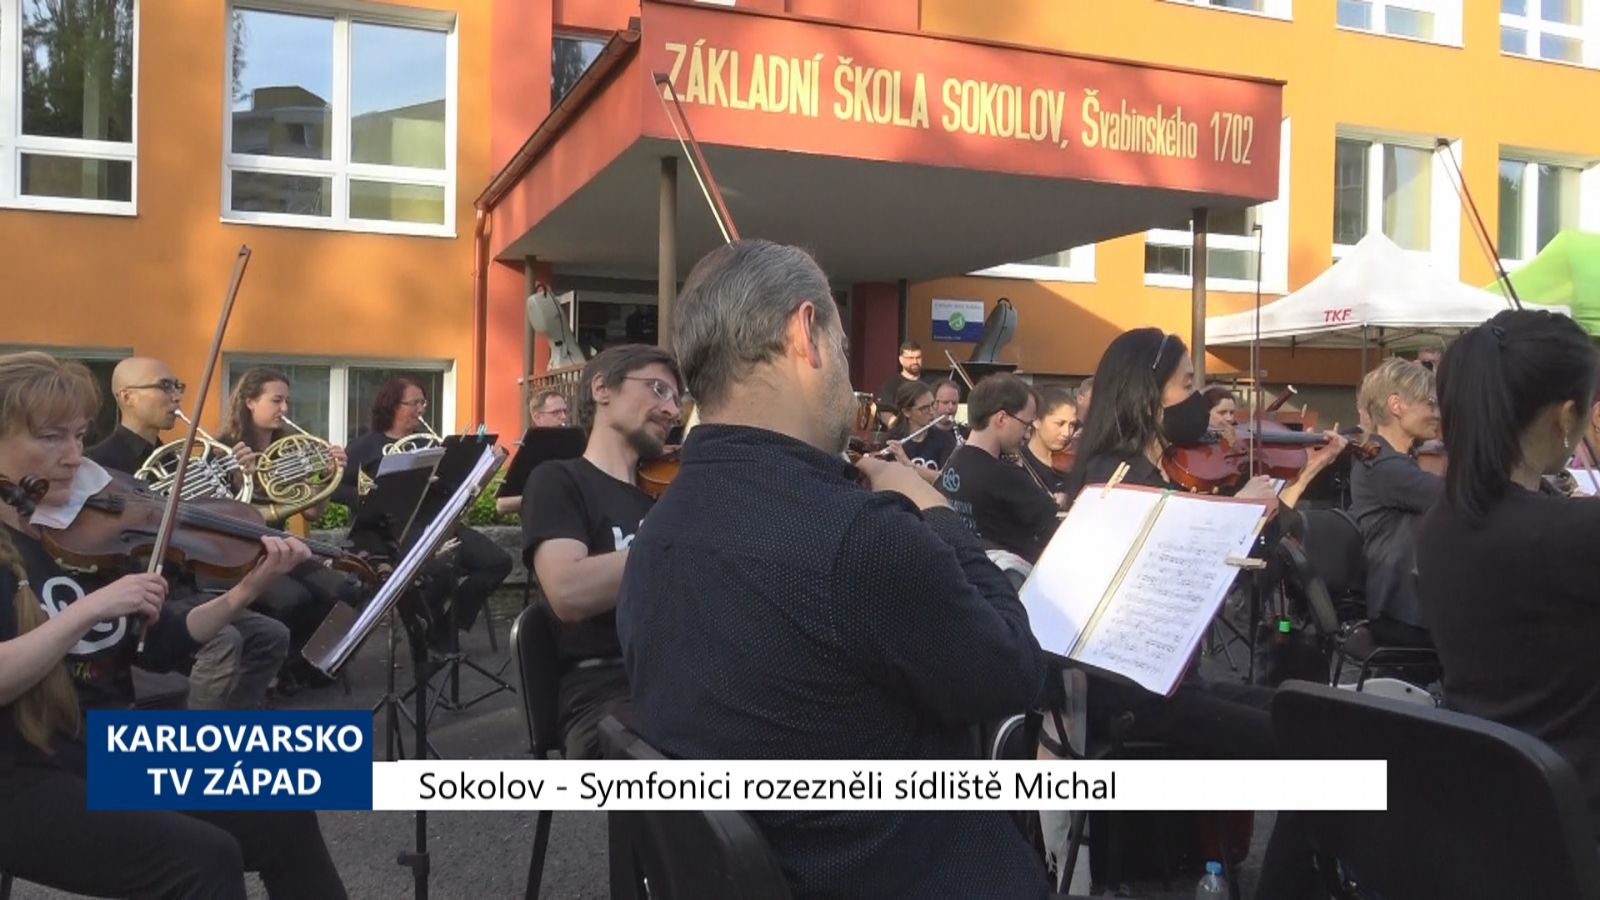 Sokolov: Symfonici rozezněli sídliště Michal (TV Západ)